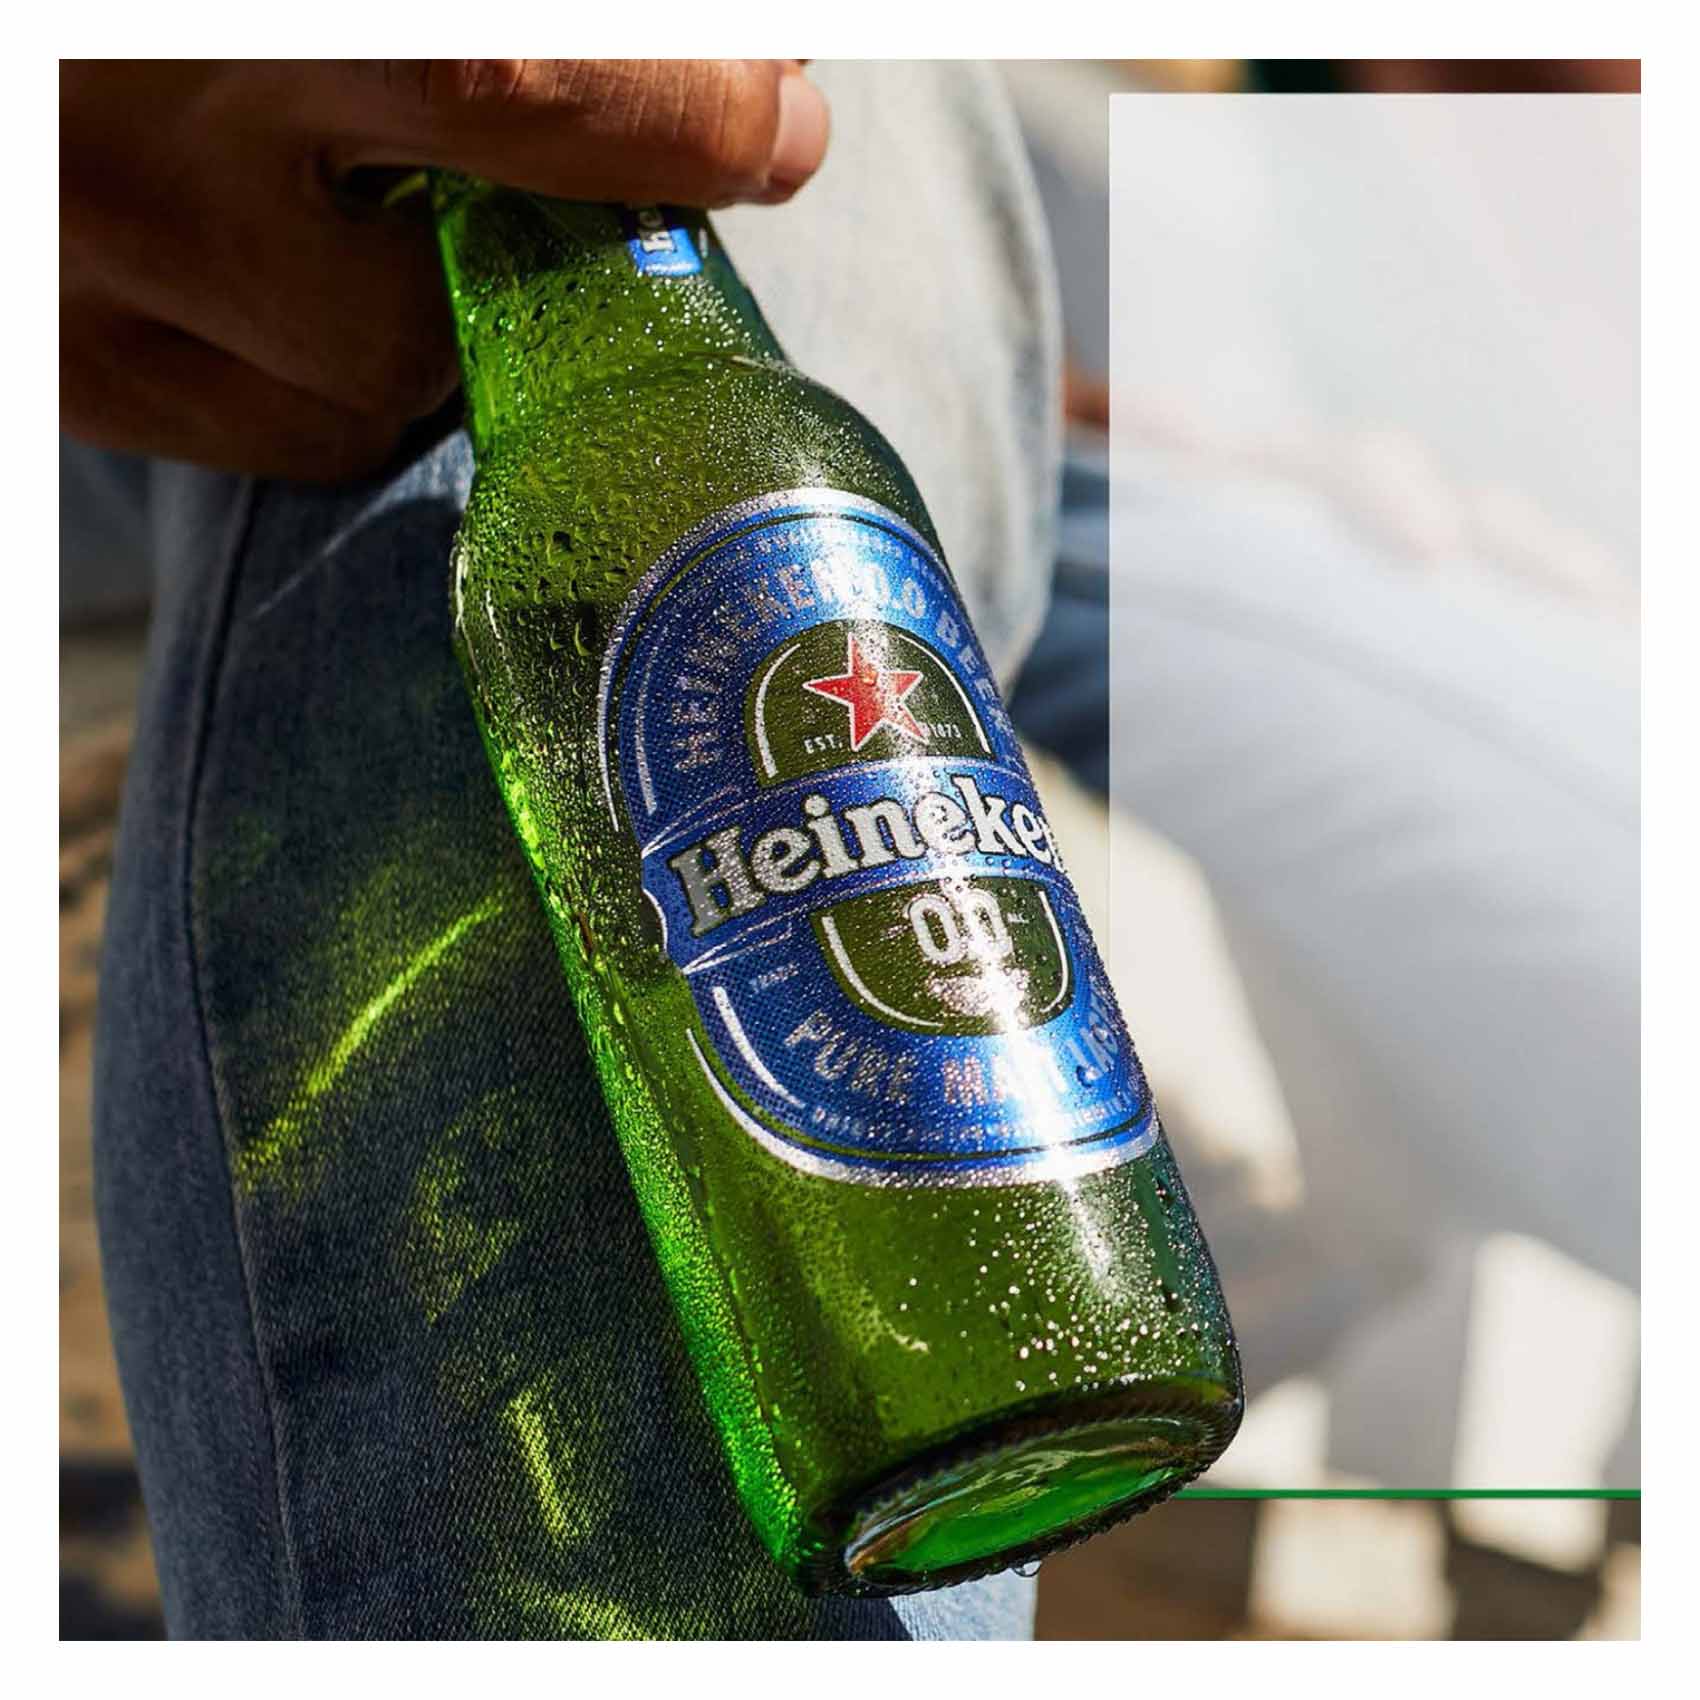 Heineken Premium Quality 0.0  Non Alcoholic Beer 330Ml